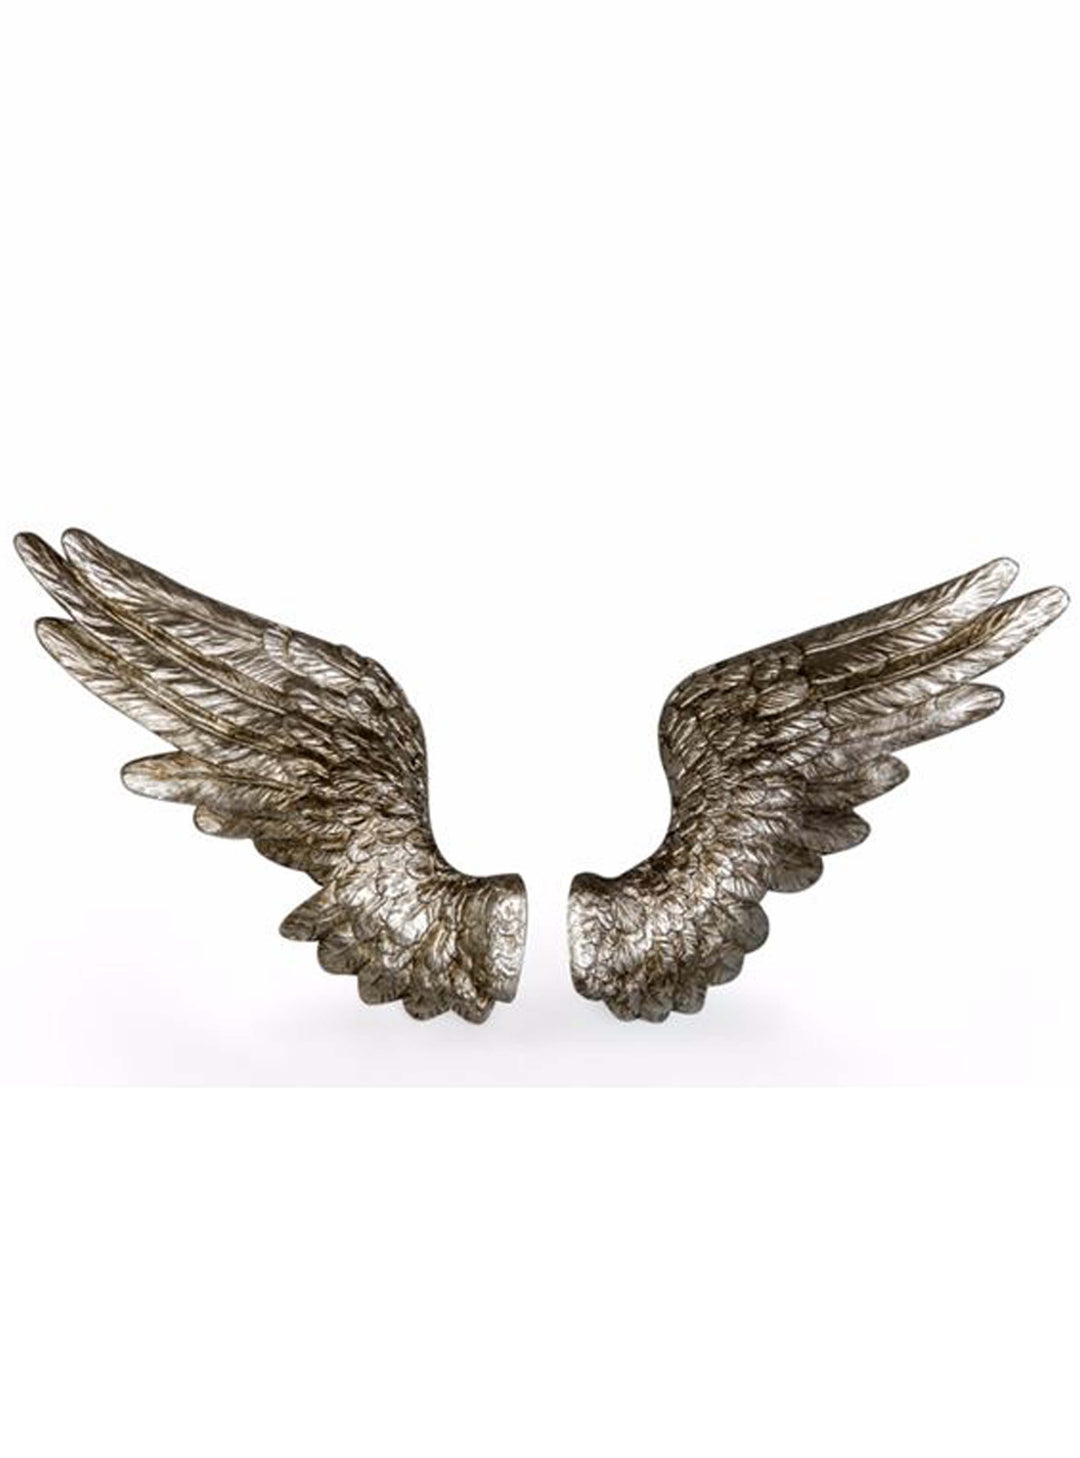 Silver Angel Wings, Pair of Angel Wings